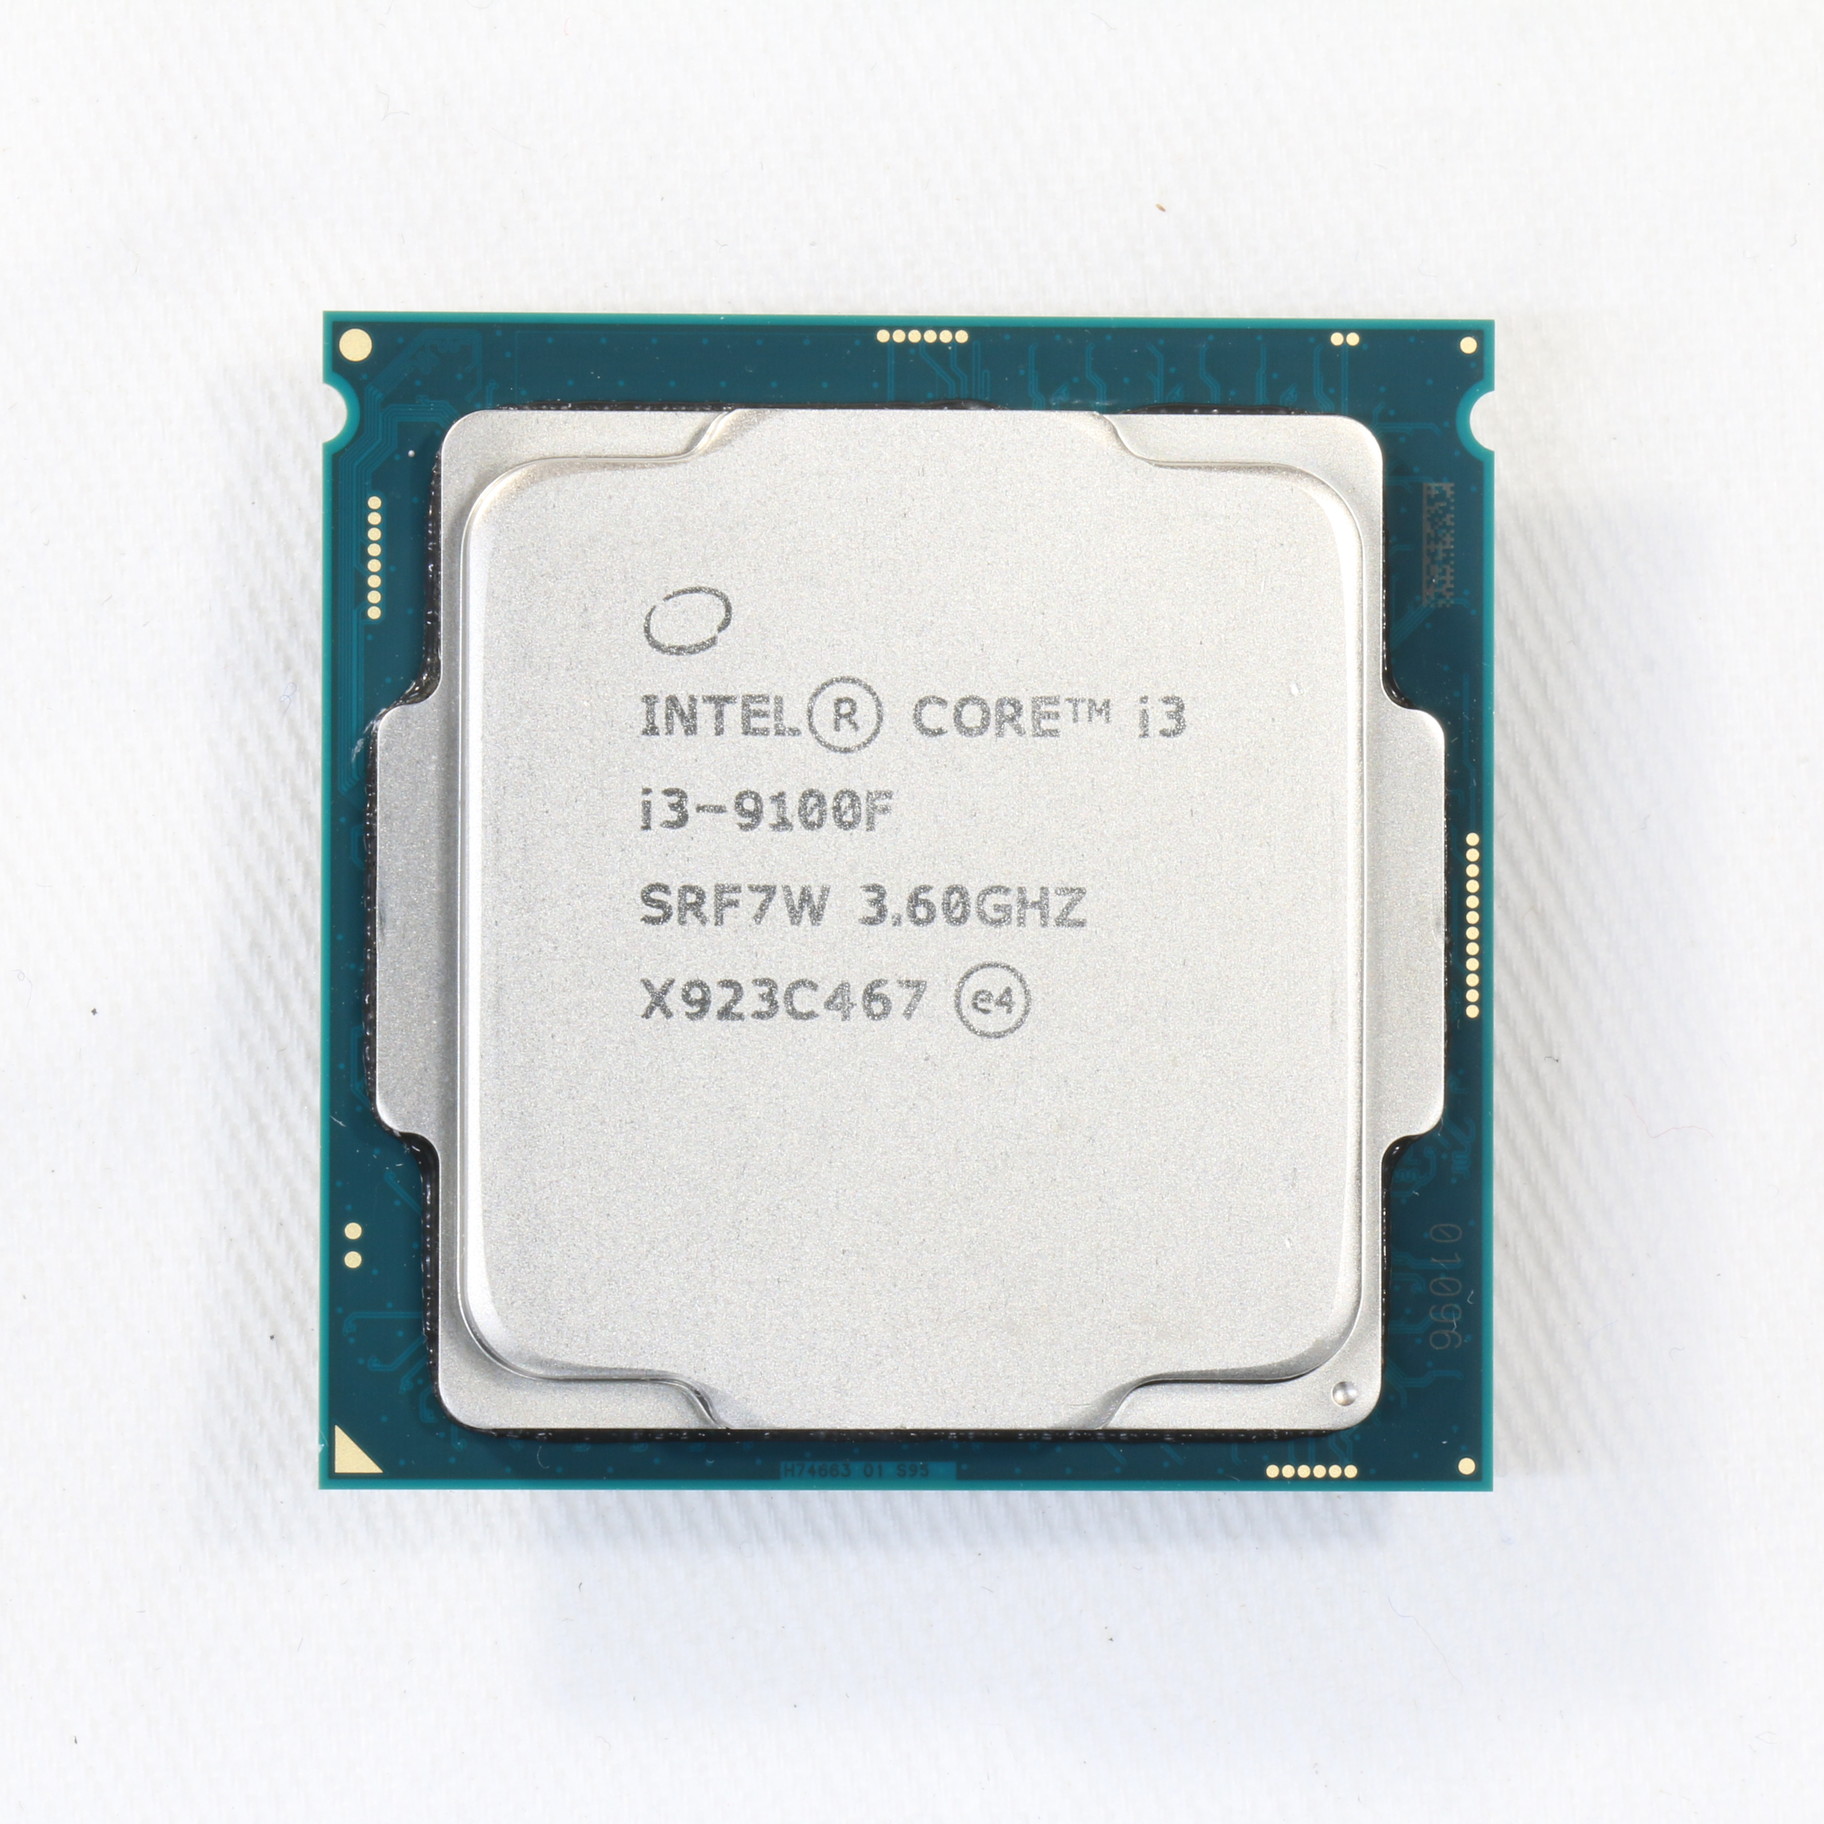 INTEL インテル core i3-9100f CPU 4コア